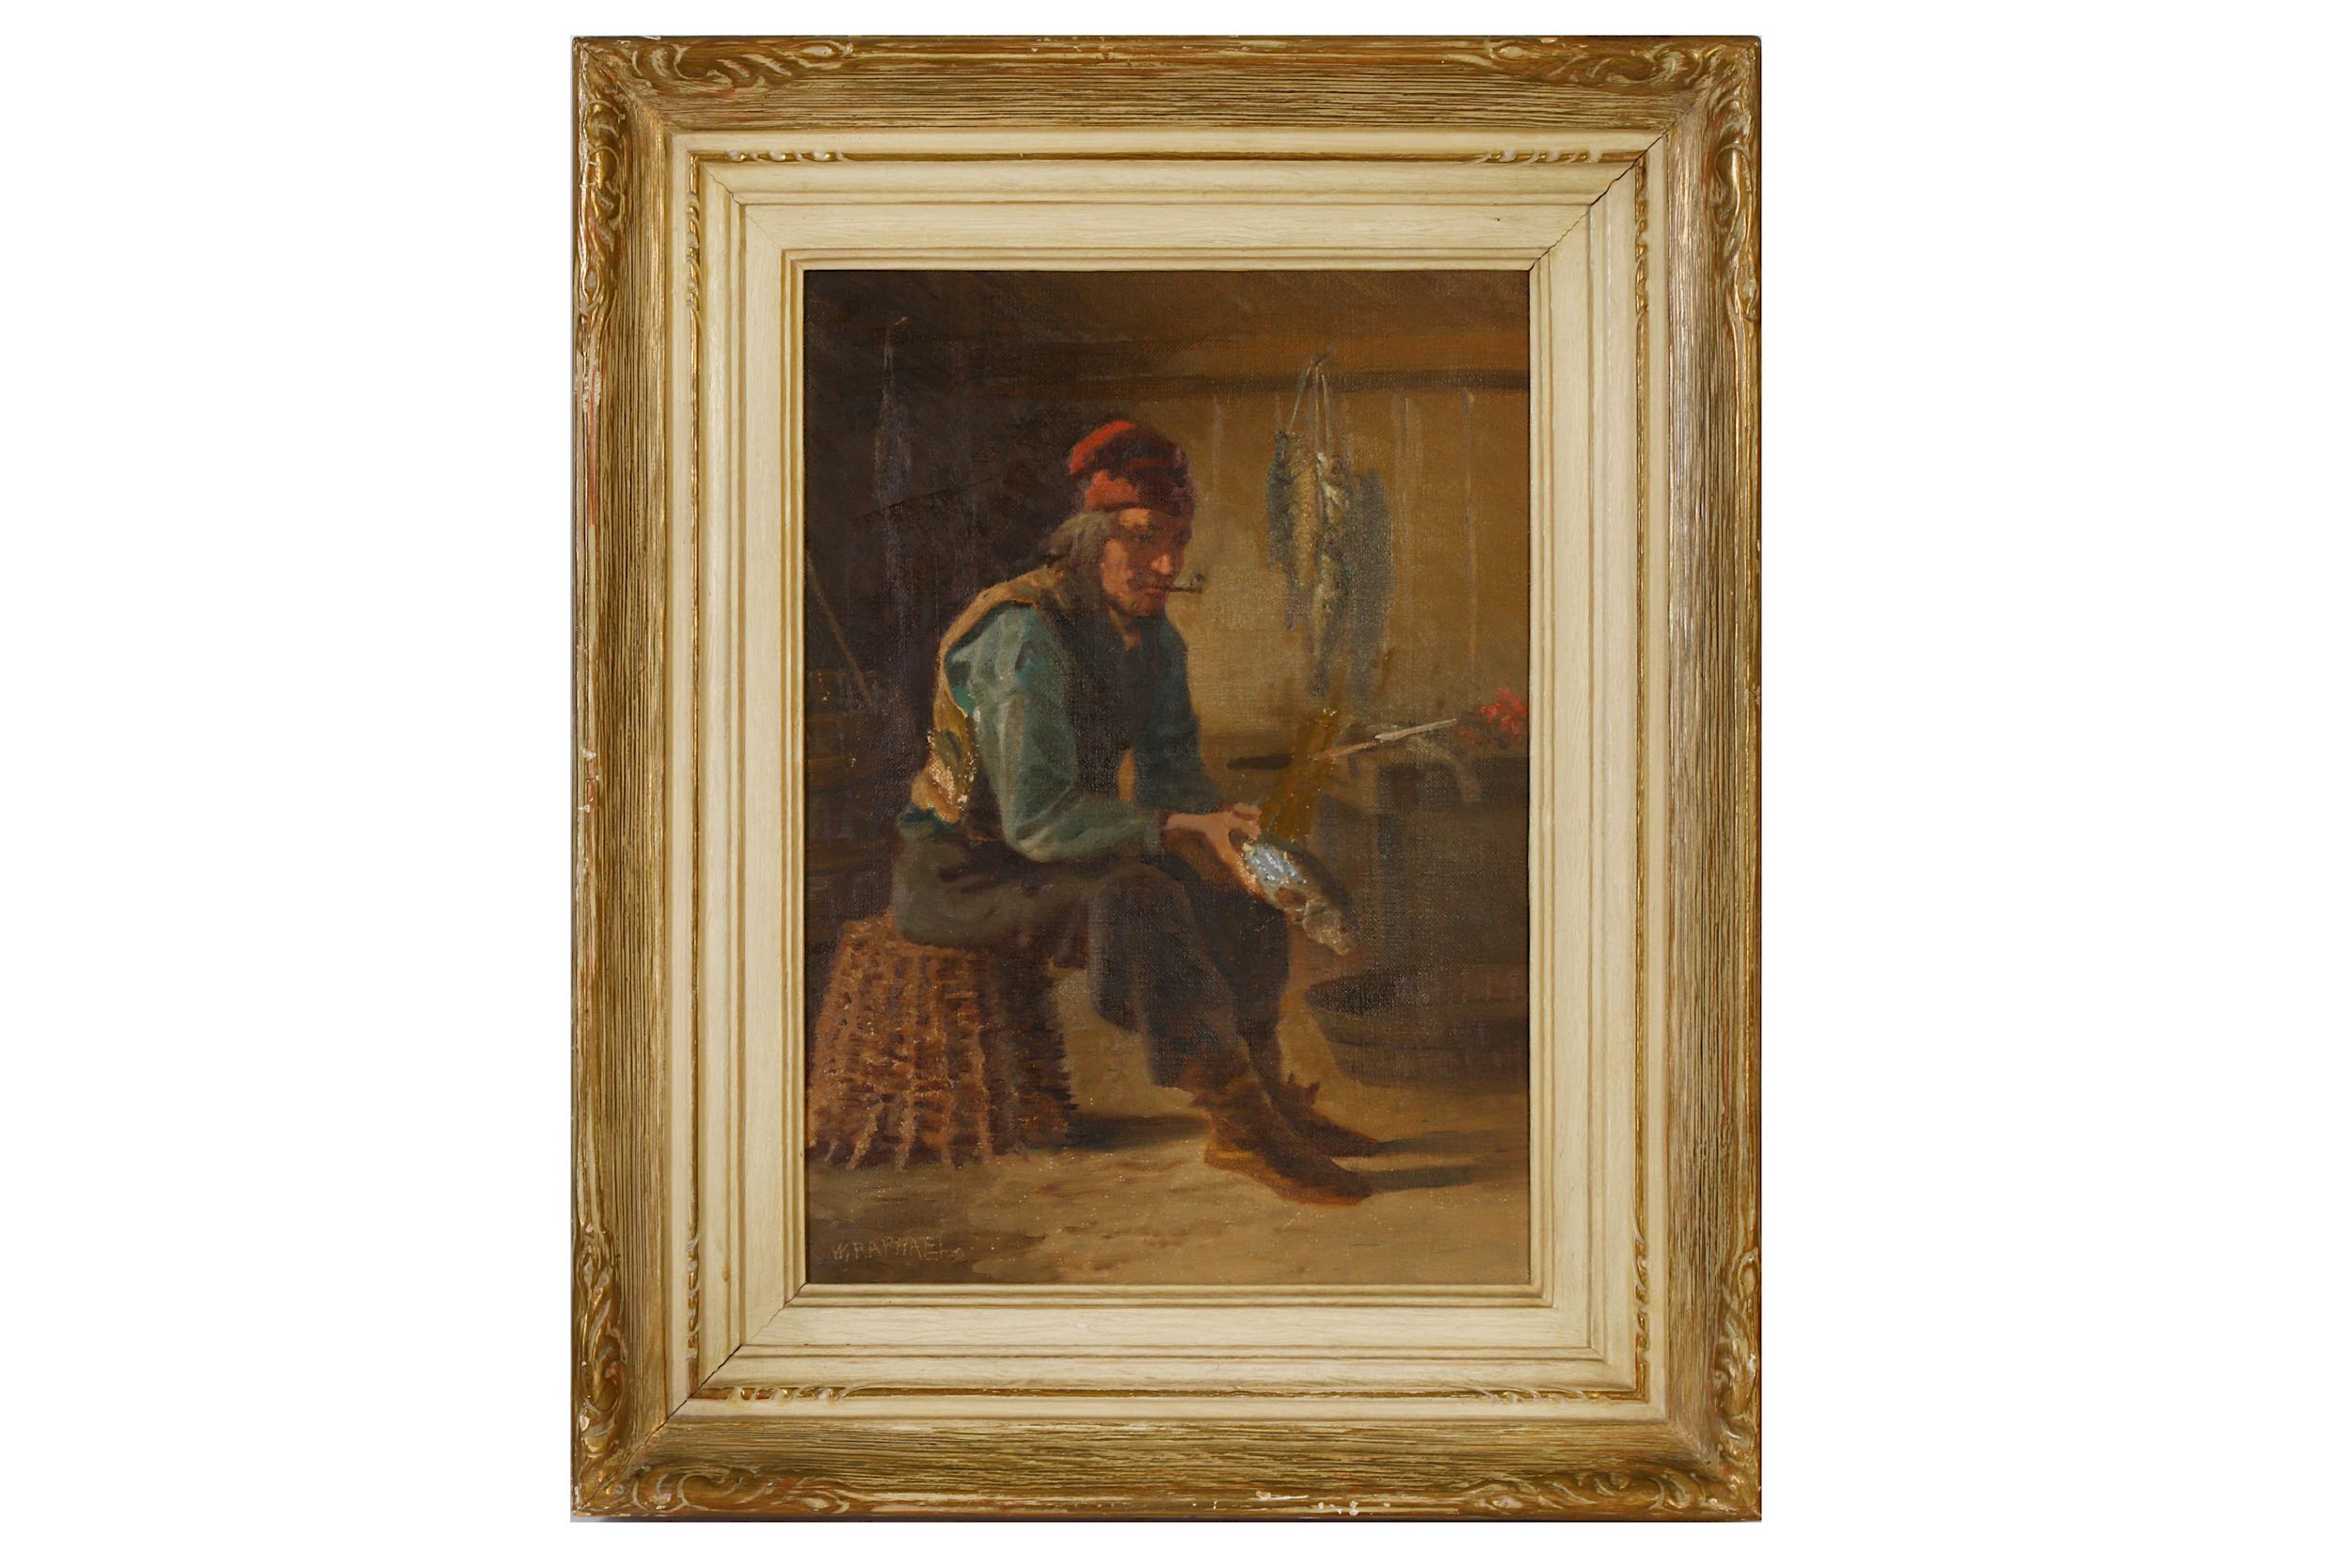 CIRCLE OF WILLIAM RAPHAEL (CANADIAN 1833 – 1914)